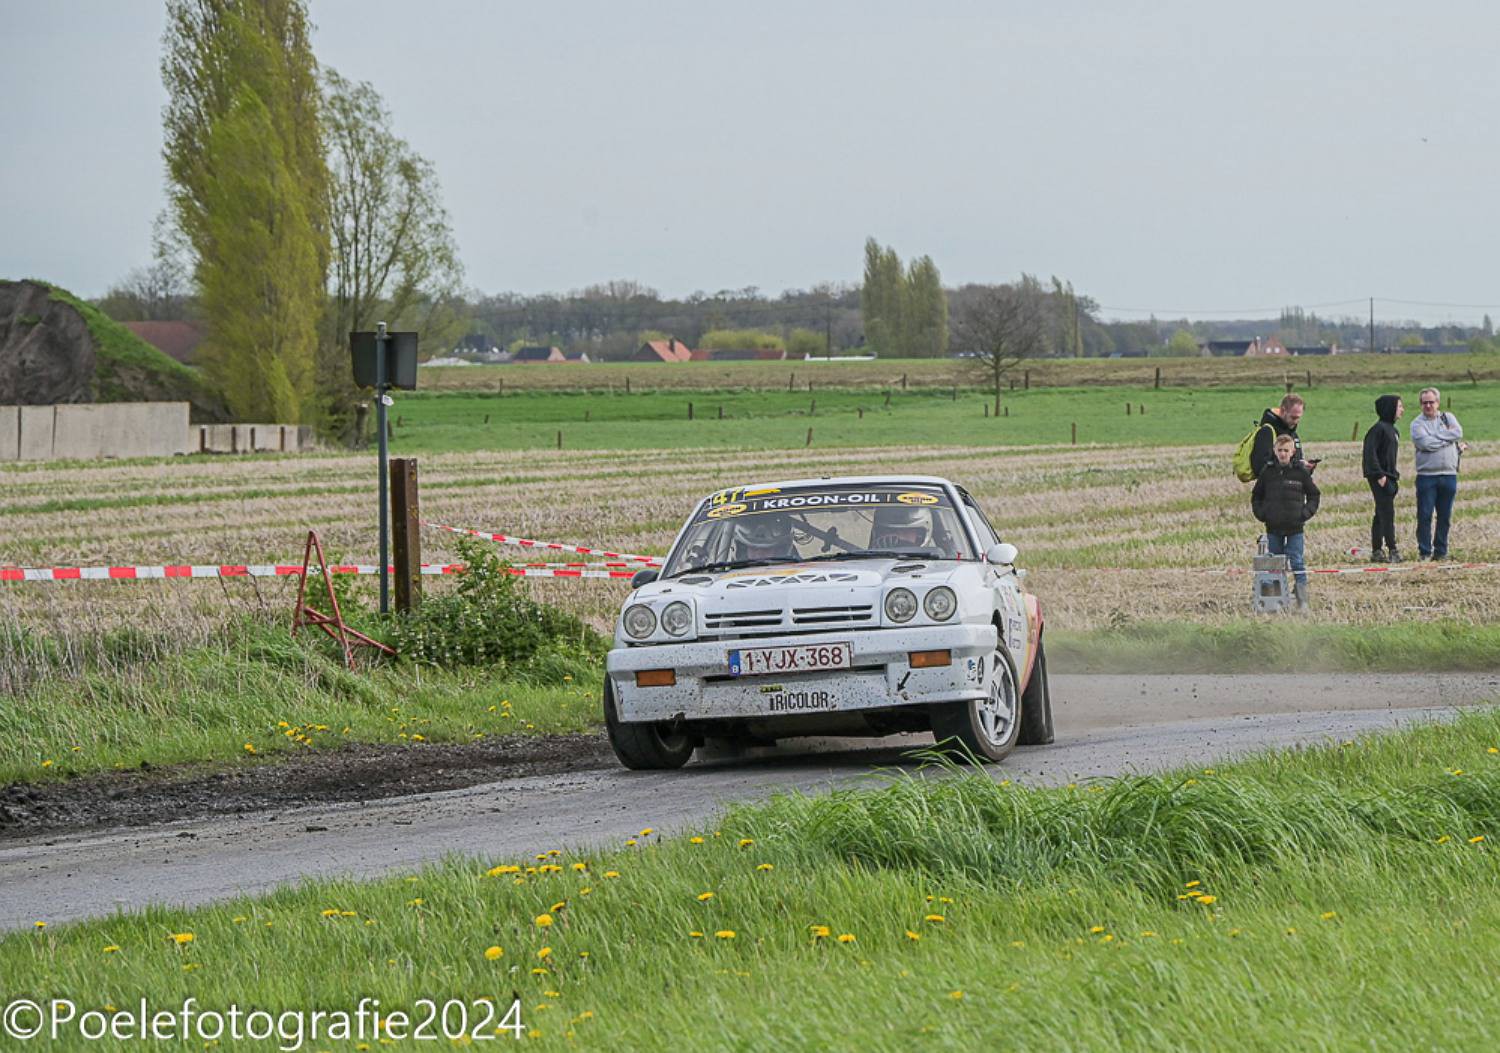 Foto-album TAC Rally door Geert Evenepoel is toegevoegd.